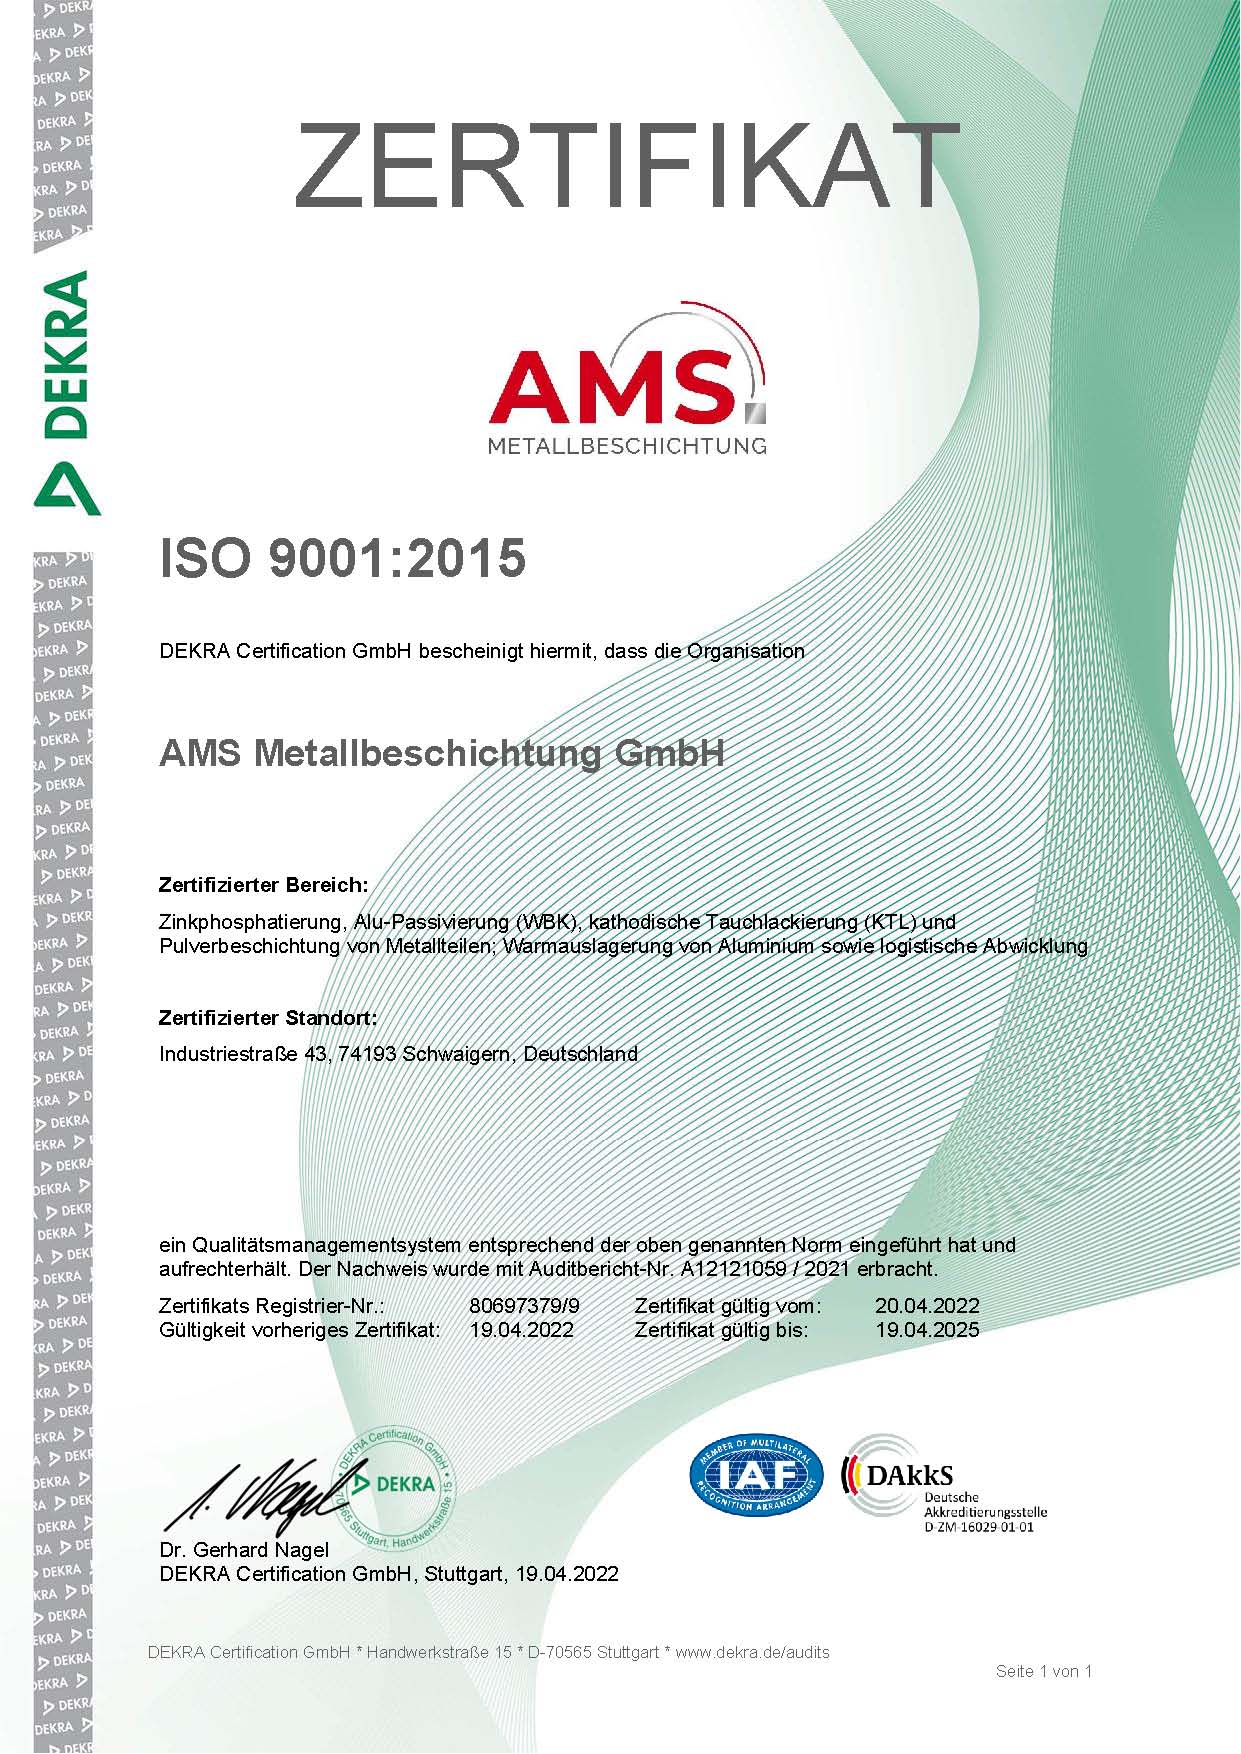 ISO-9001-Zertifikat